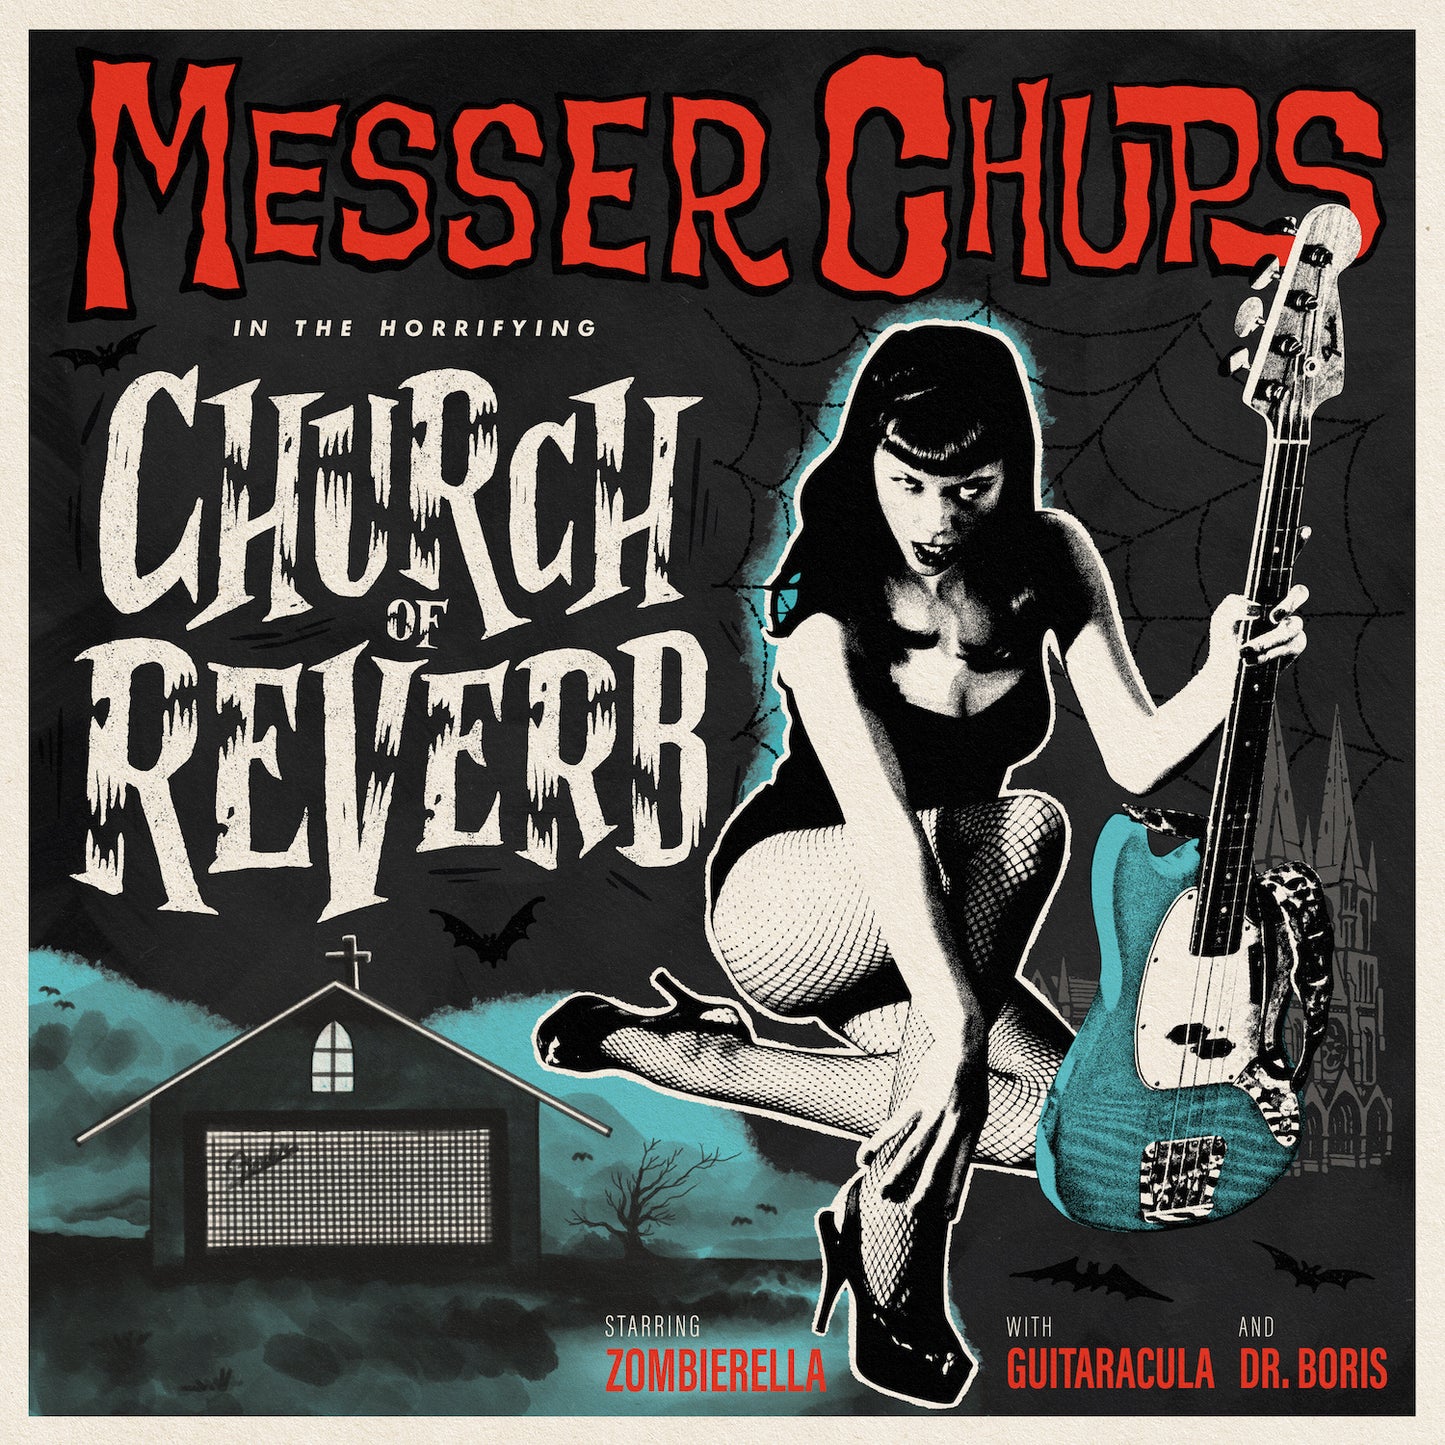 Messer Chups "Church of Reverb" LP